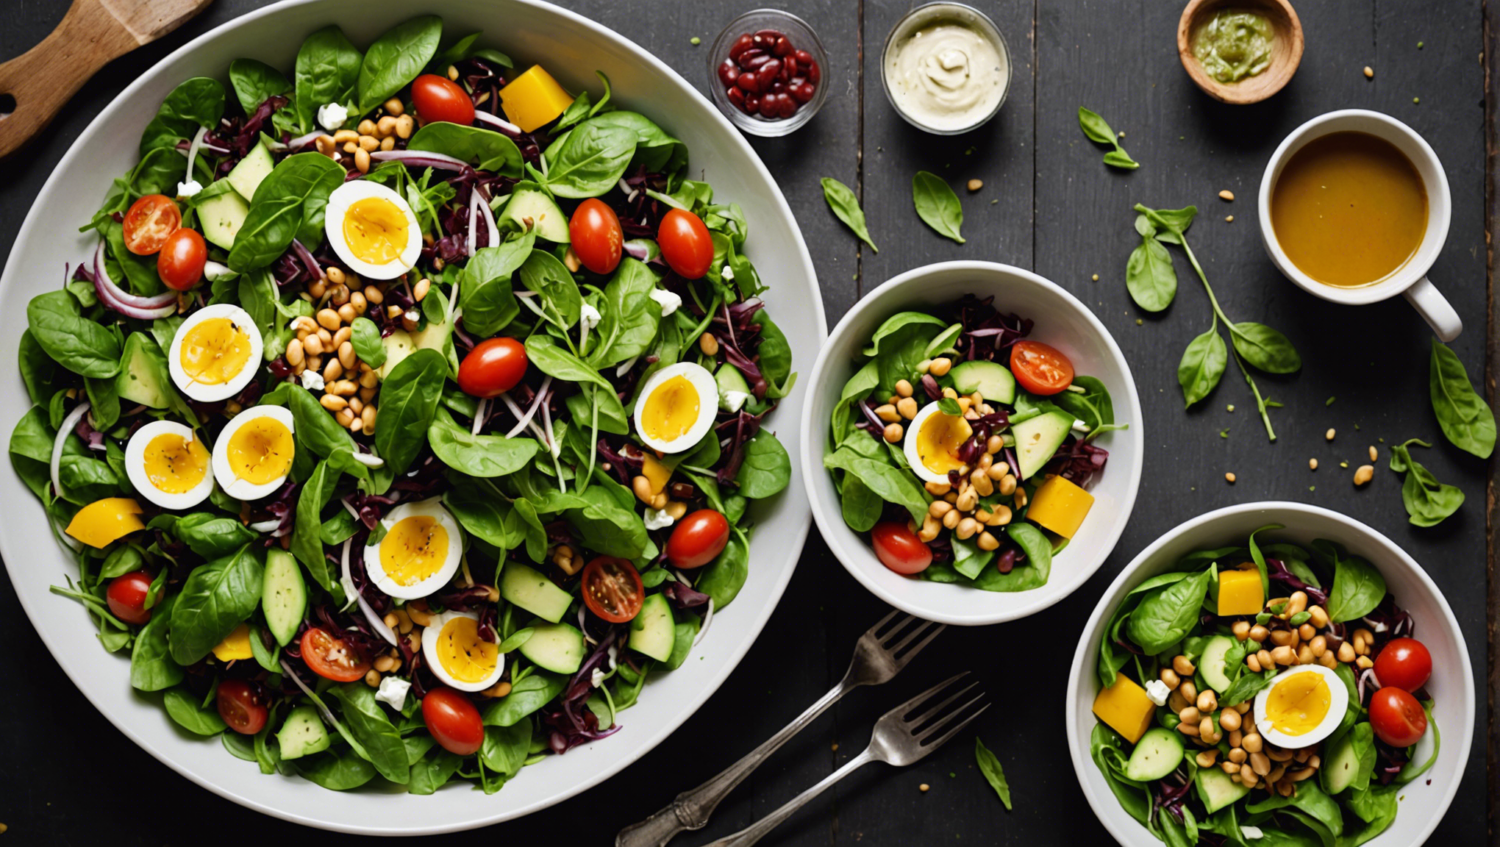 découvrez 70 recettes de salades créatives pour des repas originaux et équilibrés. de l'entrée au plat principal, réinventez votre assiette avec des idées fraîches et innovantes.